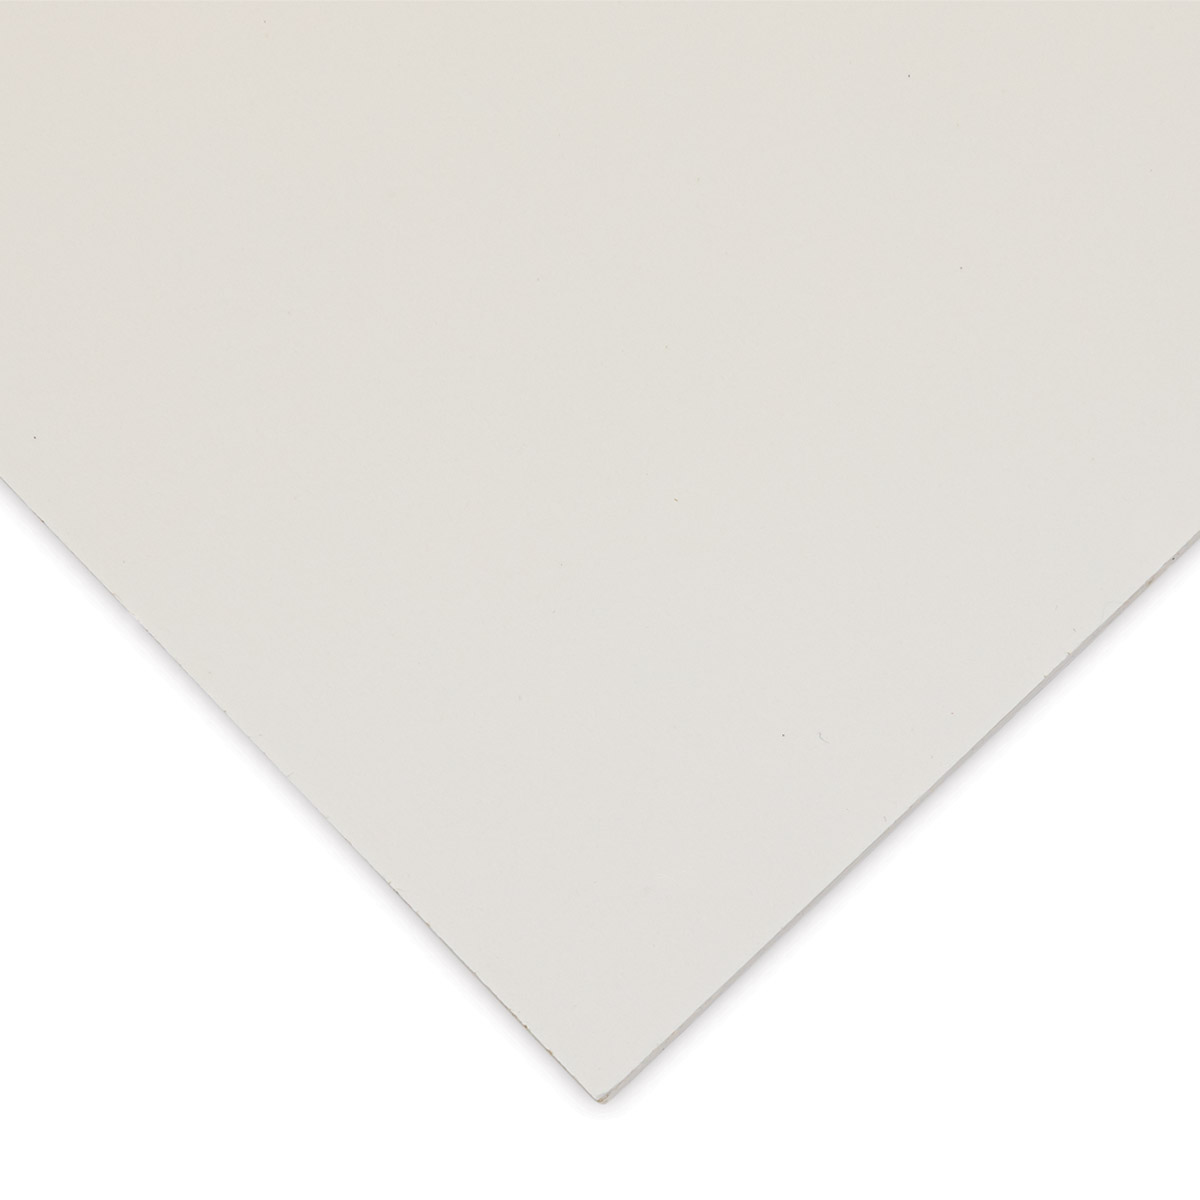 Fabriano Artistico Enhanced Watercolor Block - Traditional White, Cold Press, 7 x 10